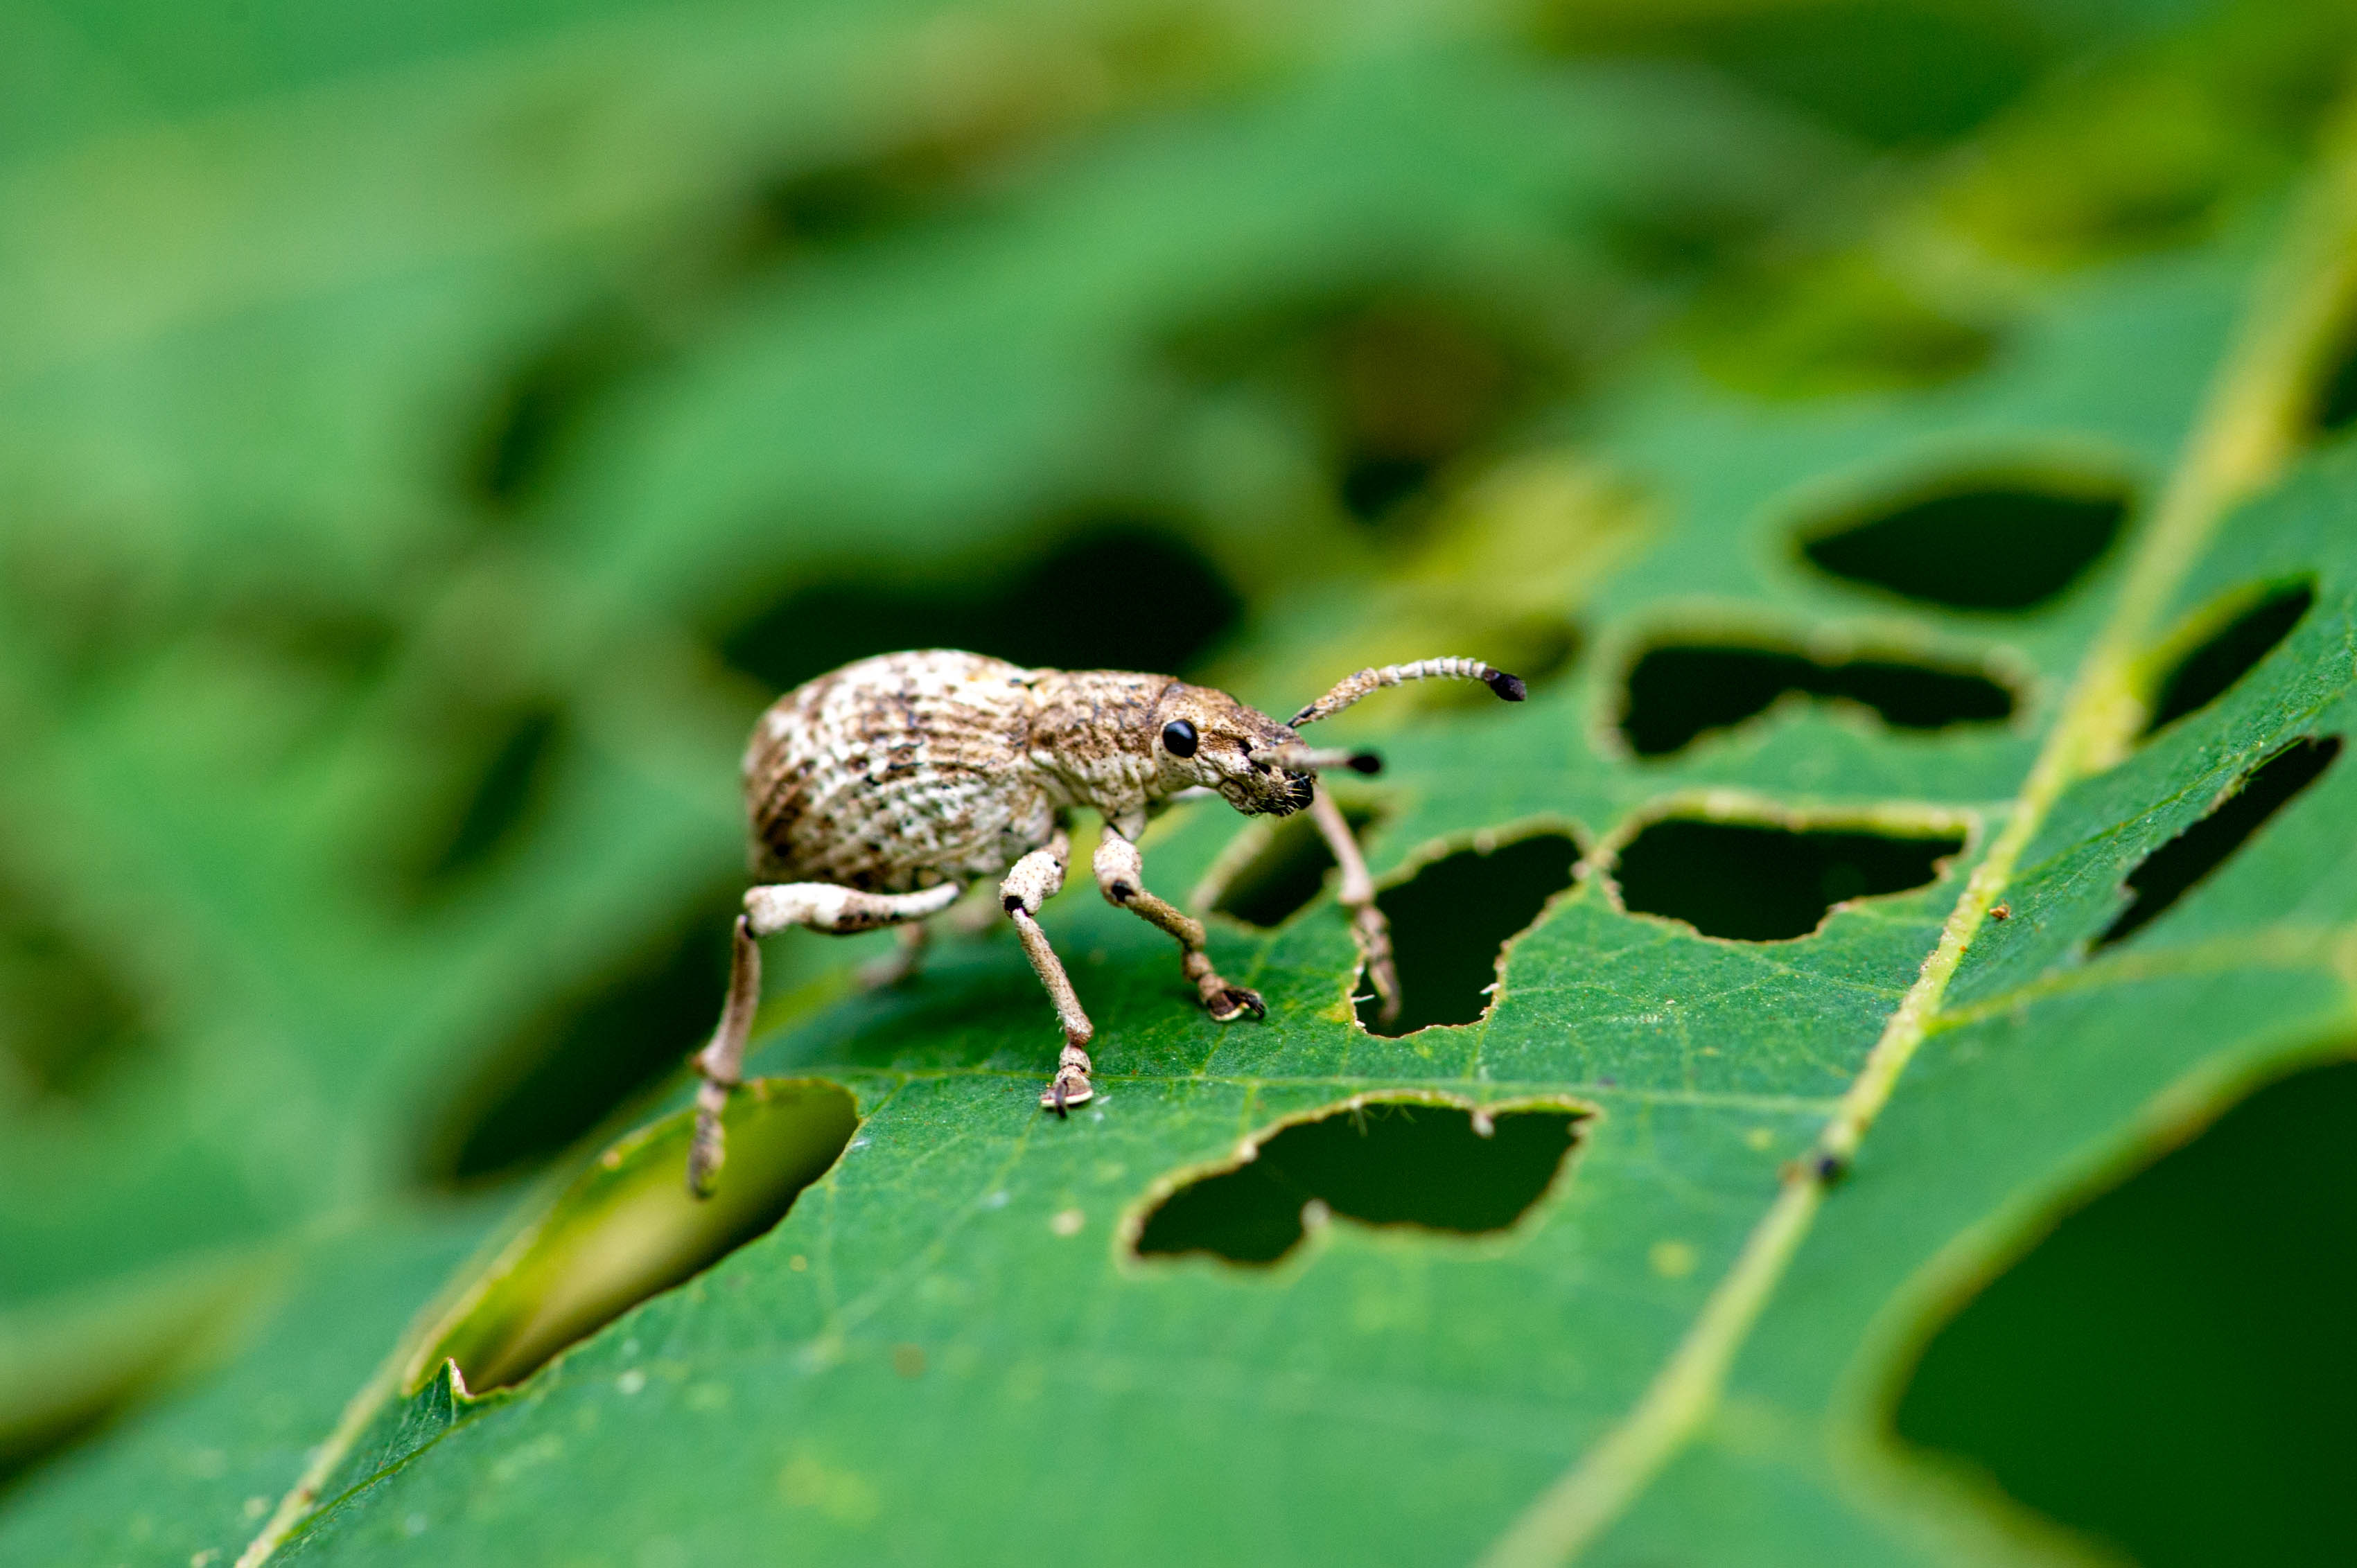 オキナワクワゾウムシ 虫の写真と生態なら昆虫写真図鑑 ムシミル